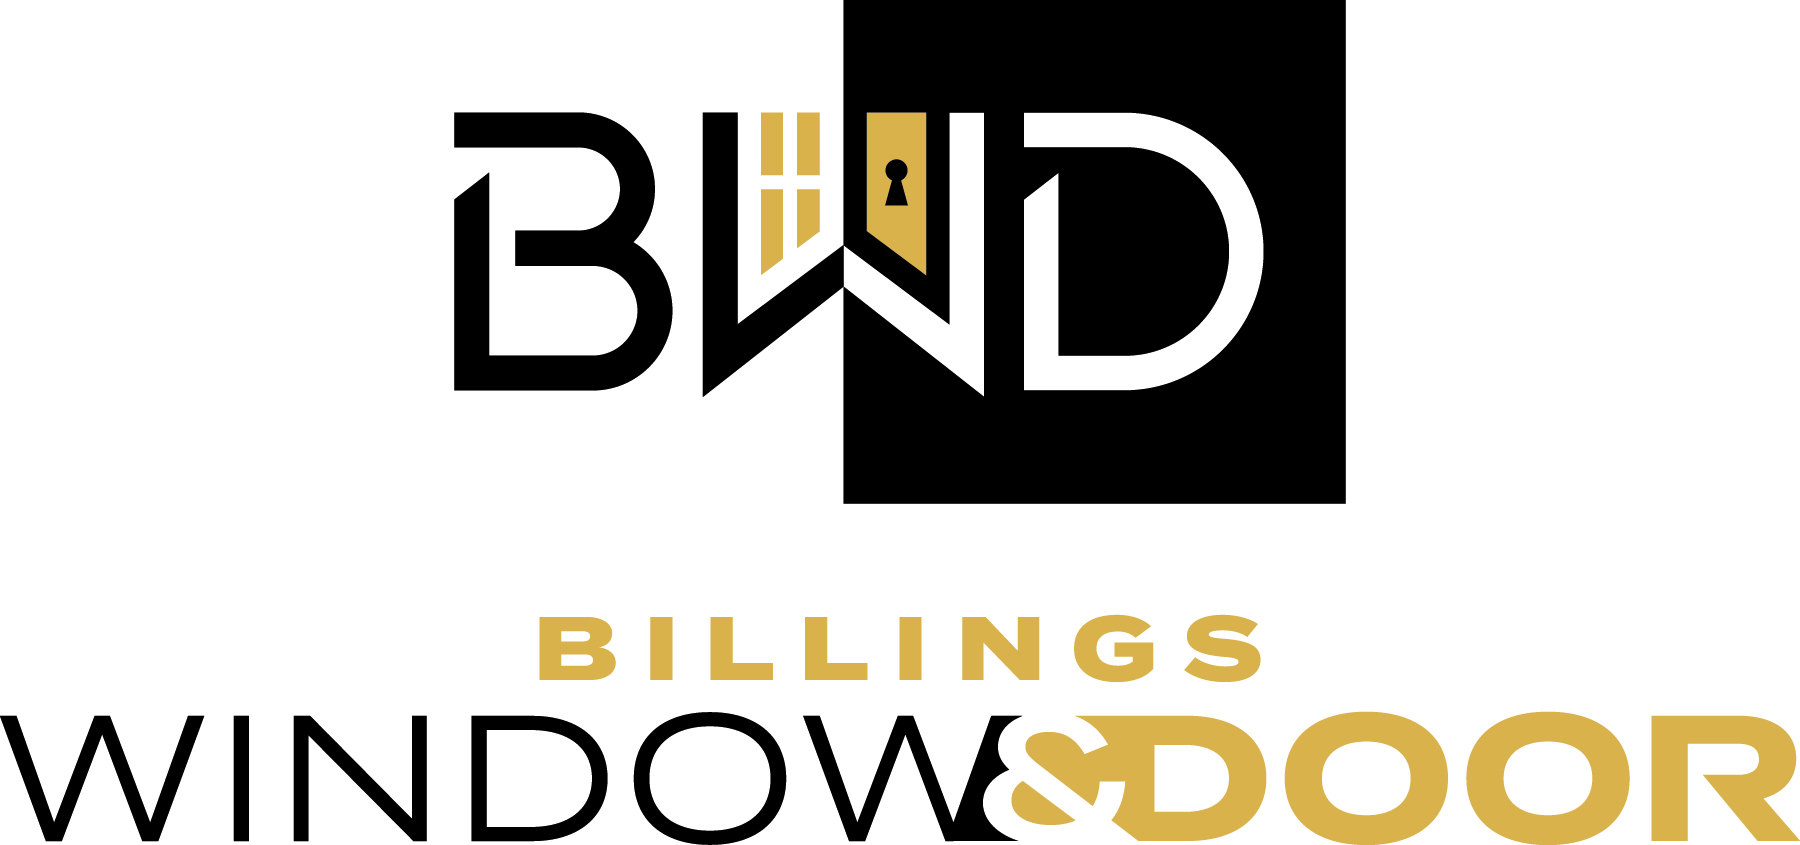 Billings Window and Door logo